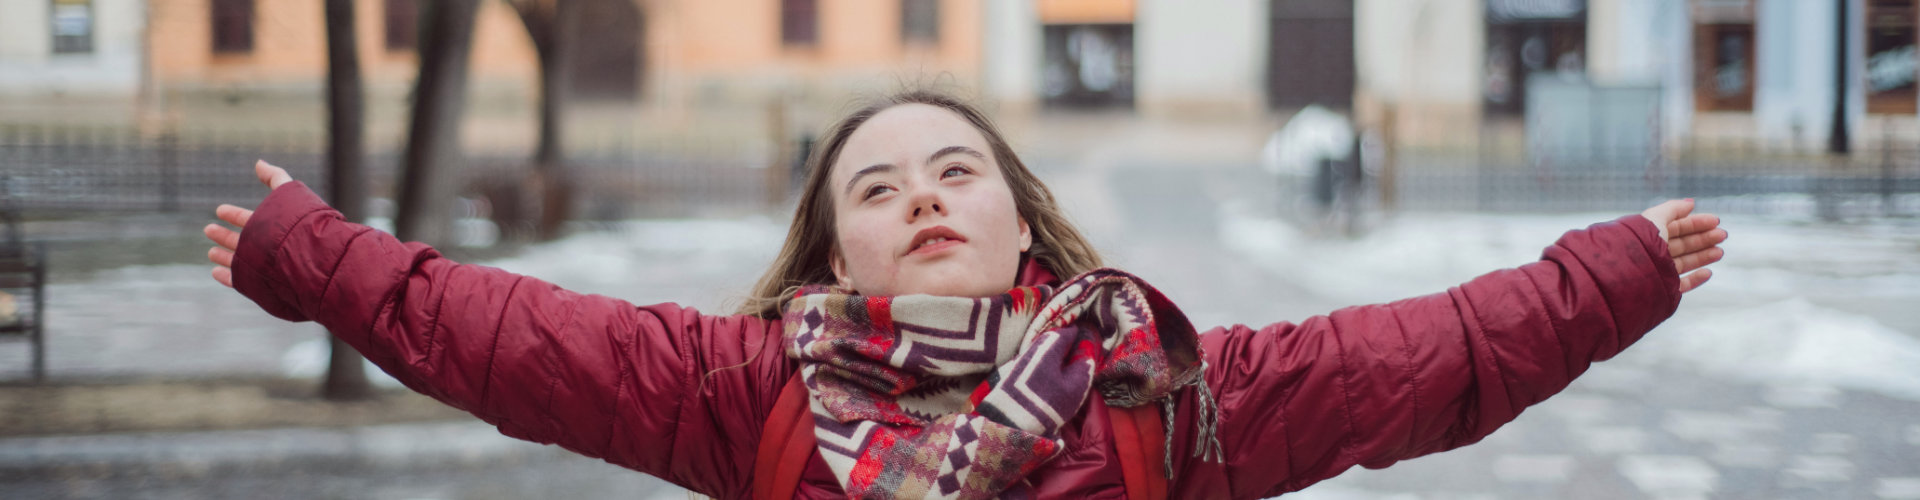 Junge Frau mit Down-Syndrom breitet fröhlich die Arme aus